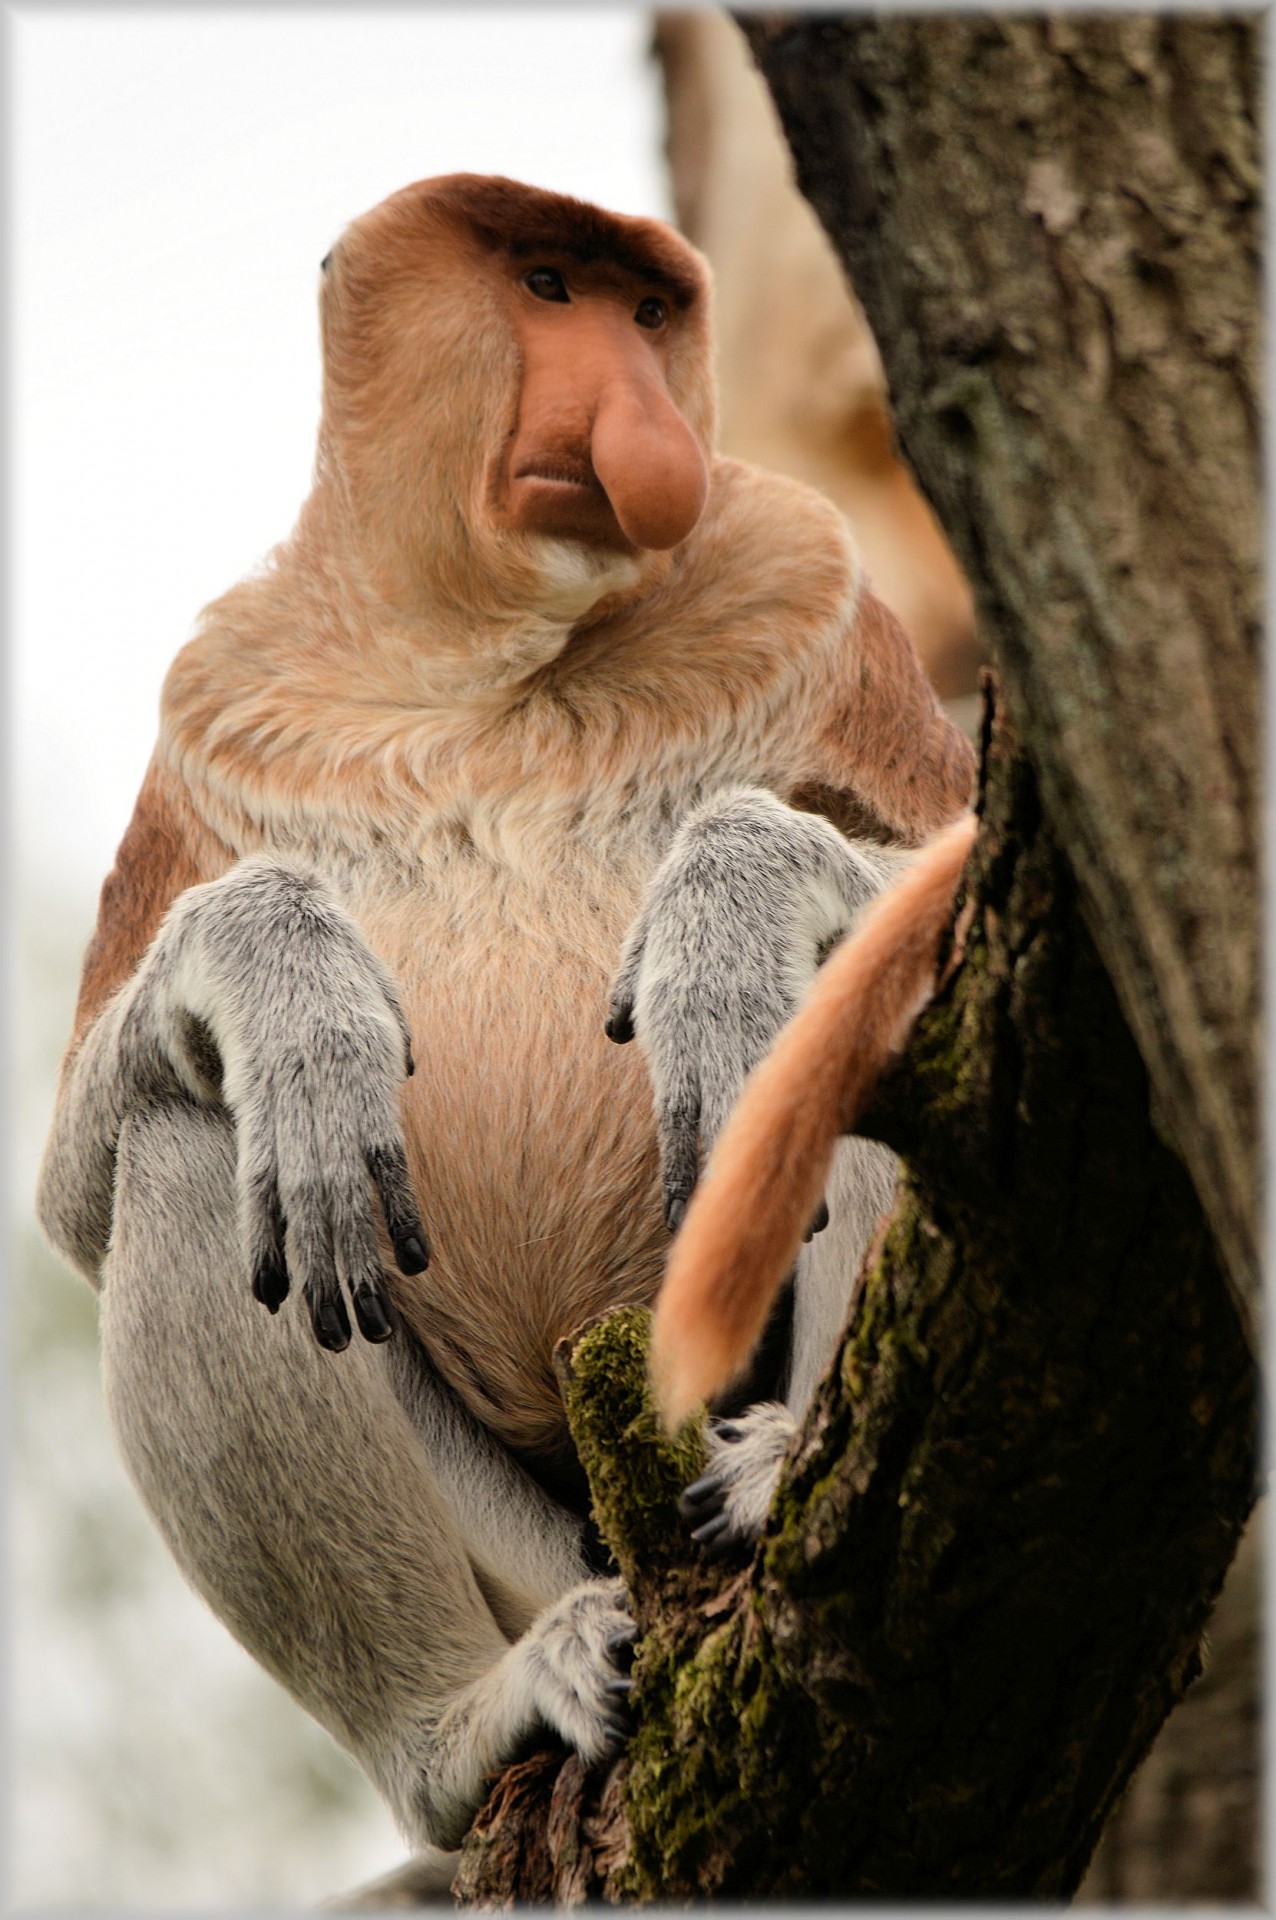 proboscis monkey monkey rare free photo